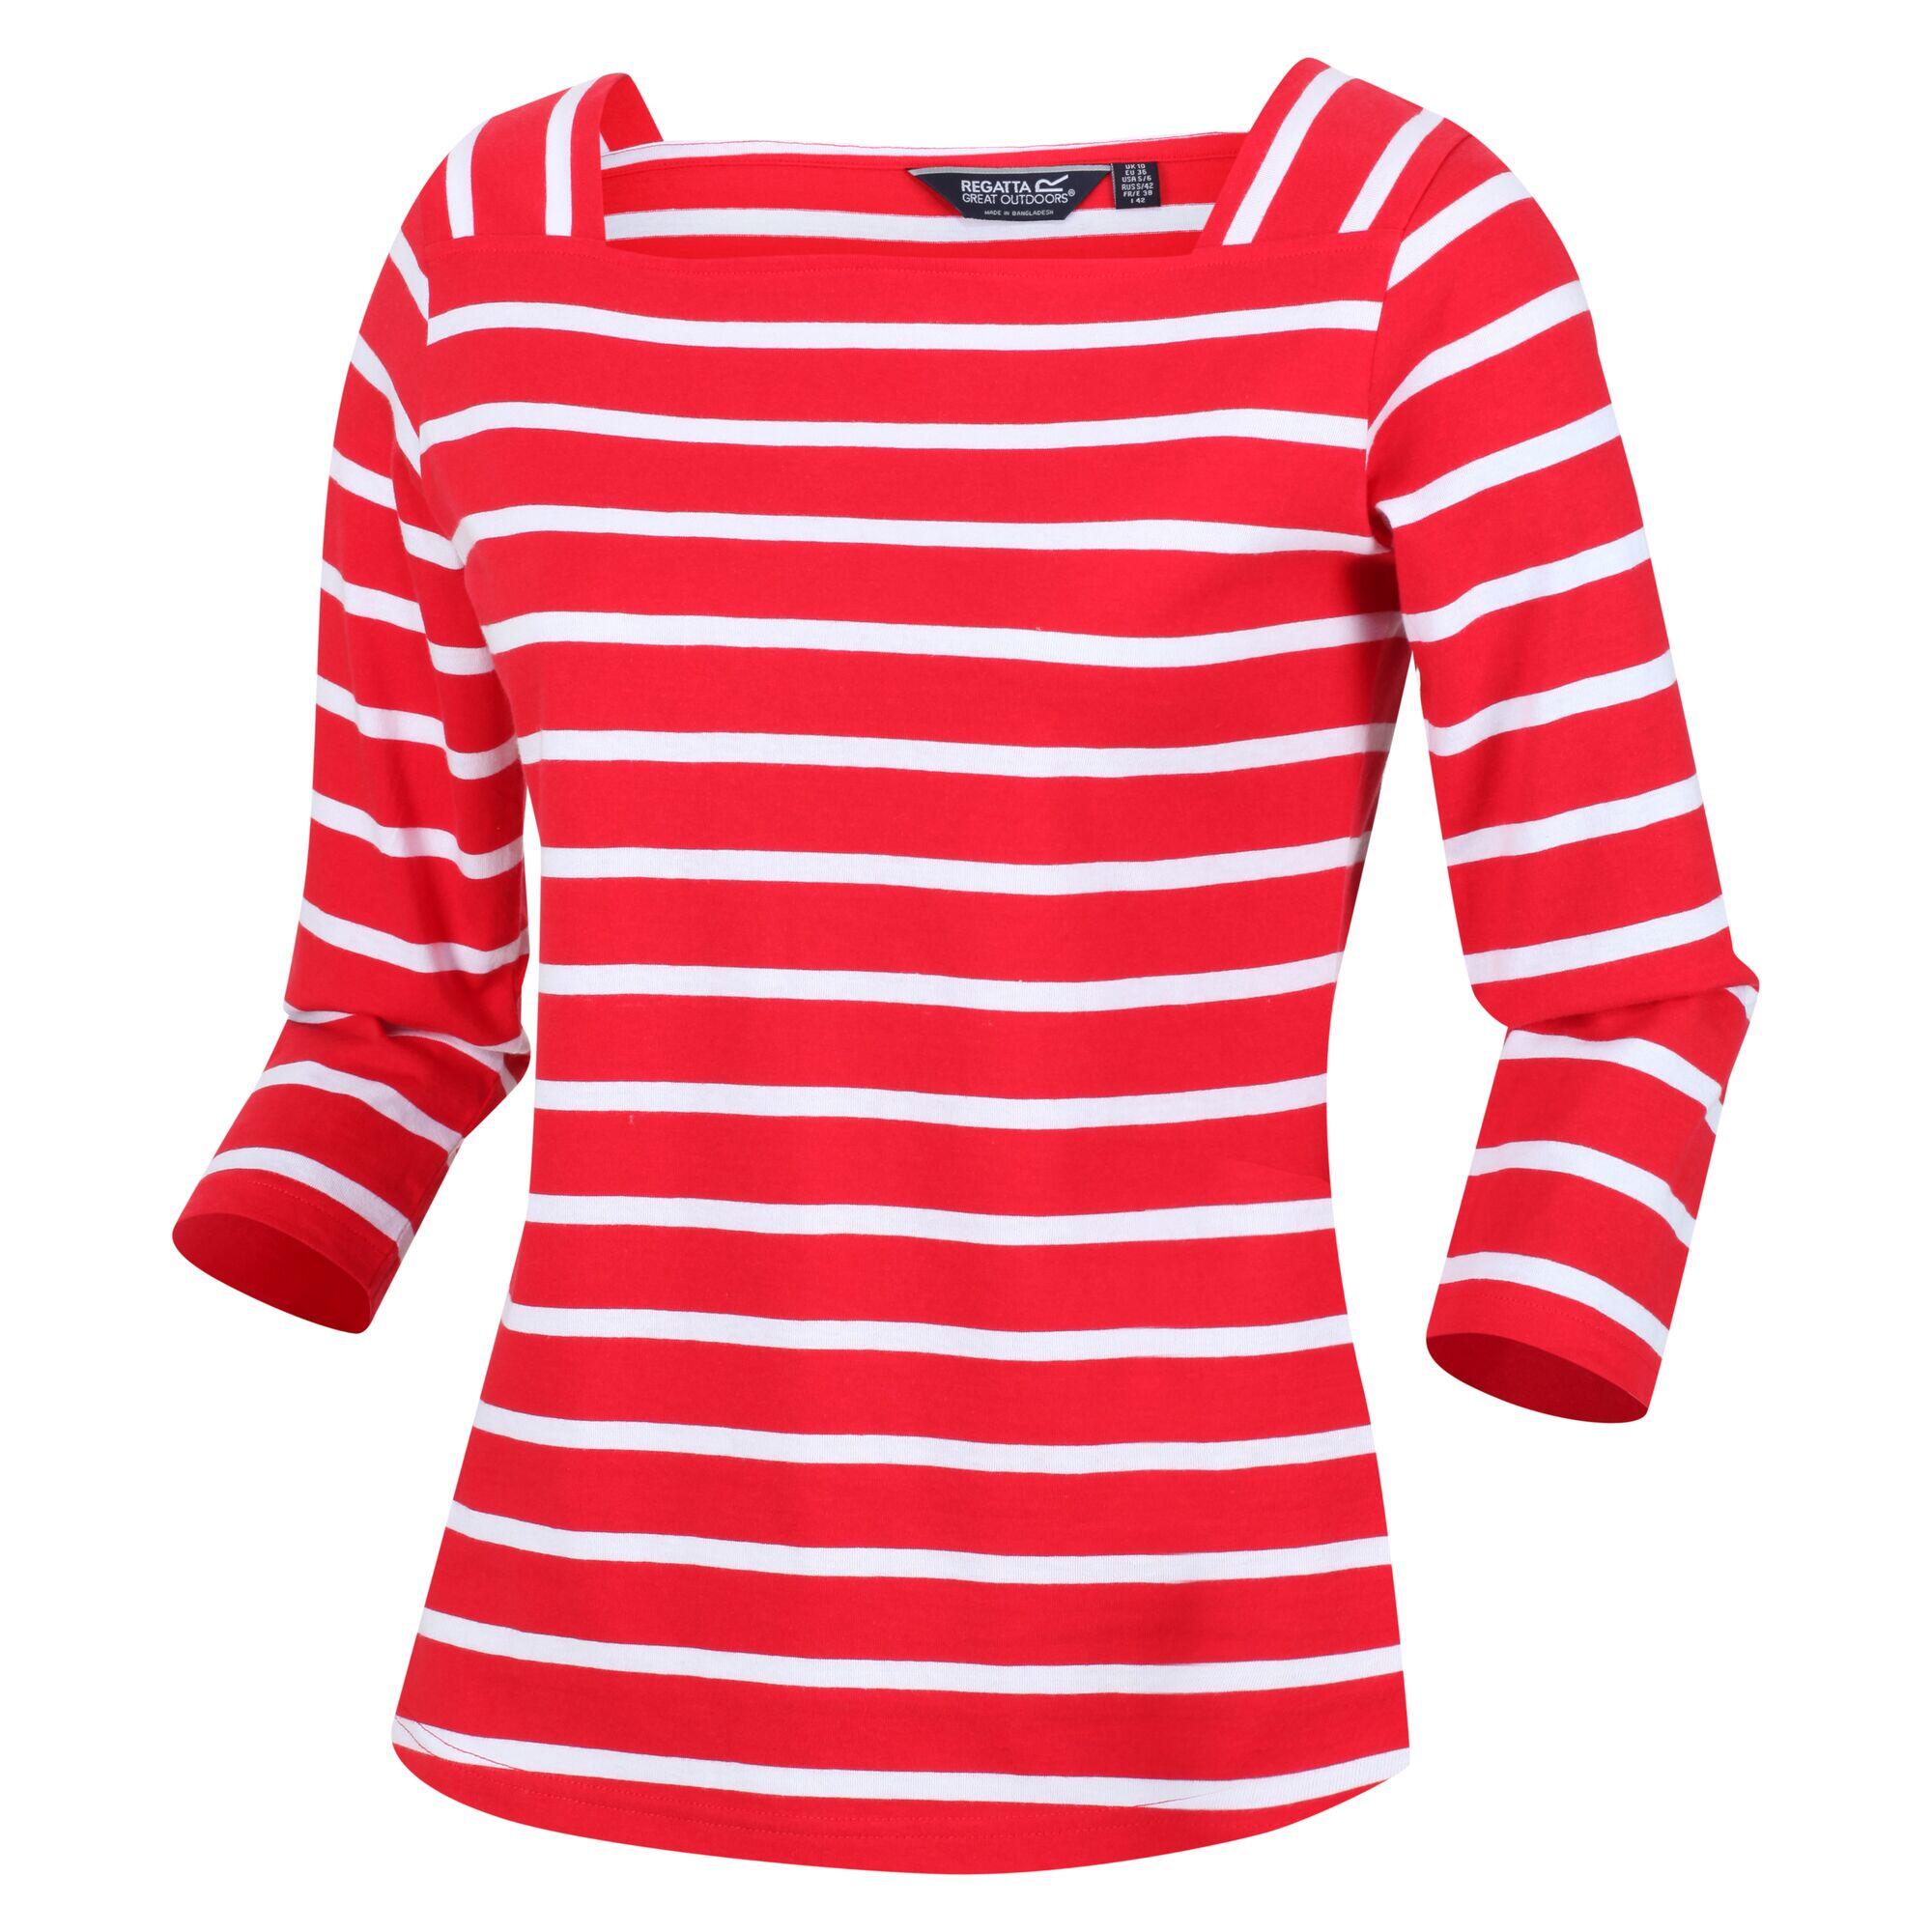 REGATTA Womens/Ladies Polexia Stripe TShirt (True Red/White)